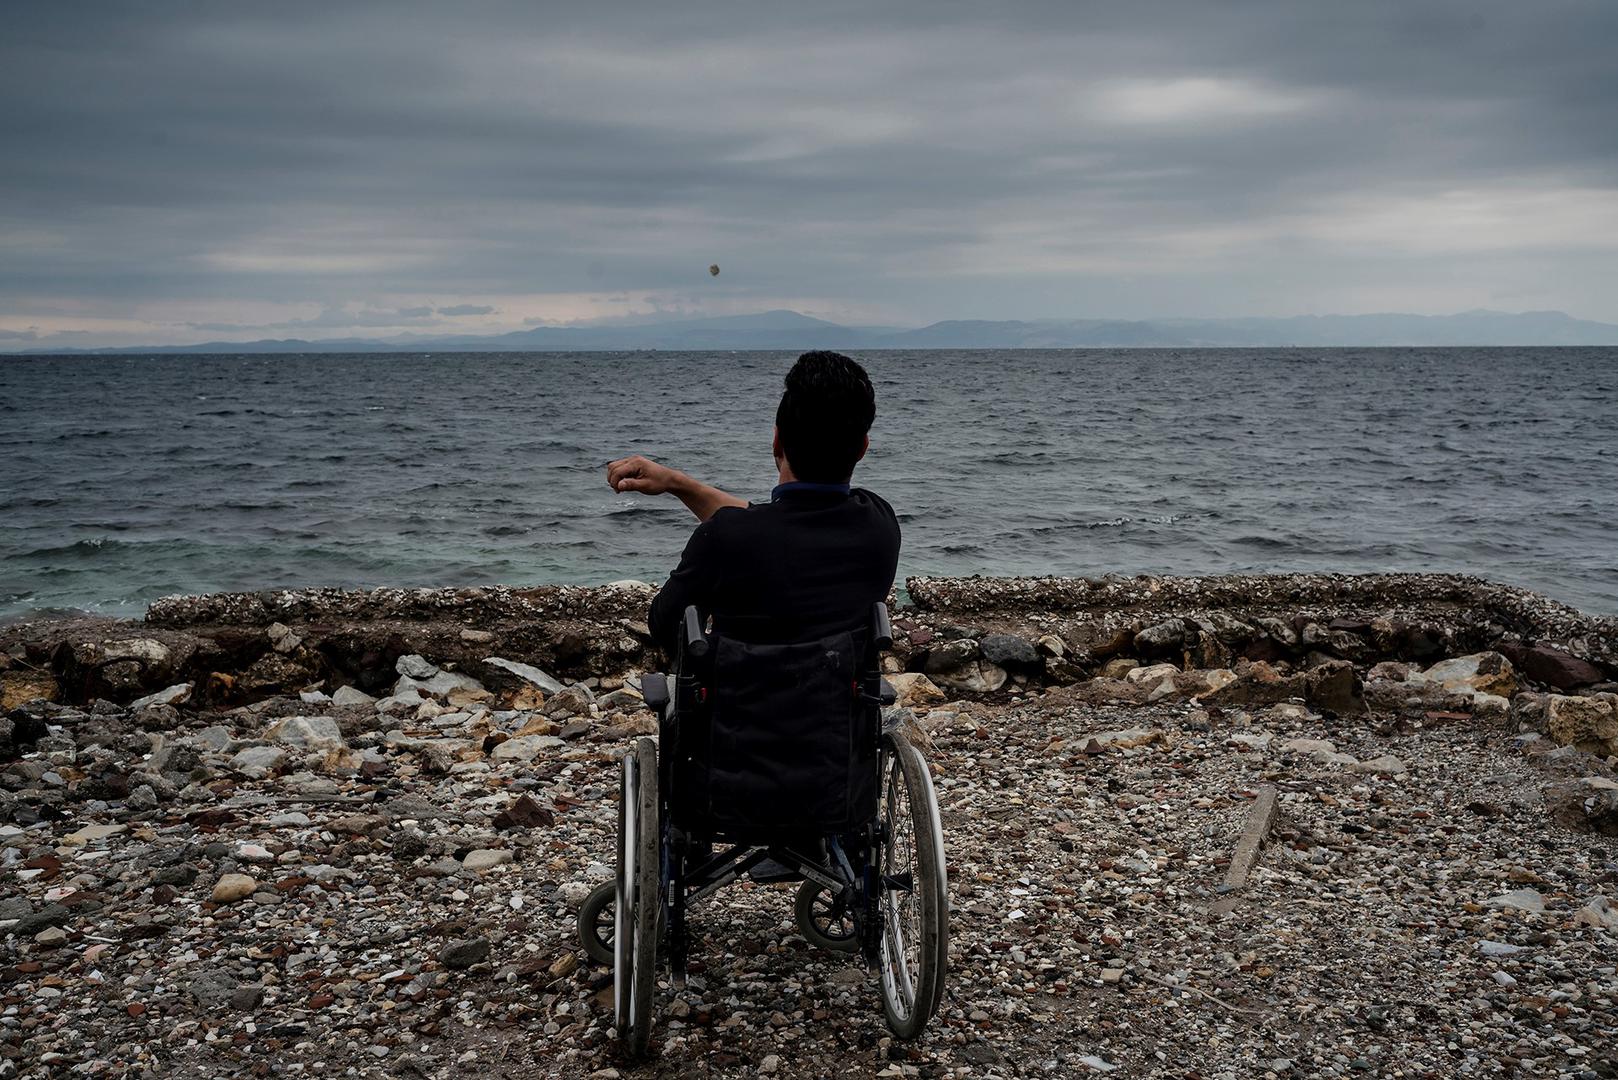 Ali, un demandeur d'asile afghan handicapé âgé de 22 ans, photographié en 2017 face à la mer Méditerranée non loin du camp de Moria, sur l’île grecque de Lesbos. Il a déclaré à Human Rights Watch qu'il ne pouvait pas accéder aux douches du camp, et tentai